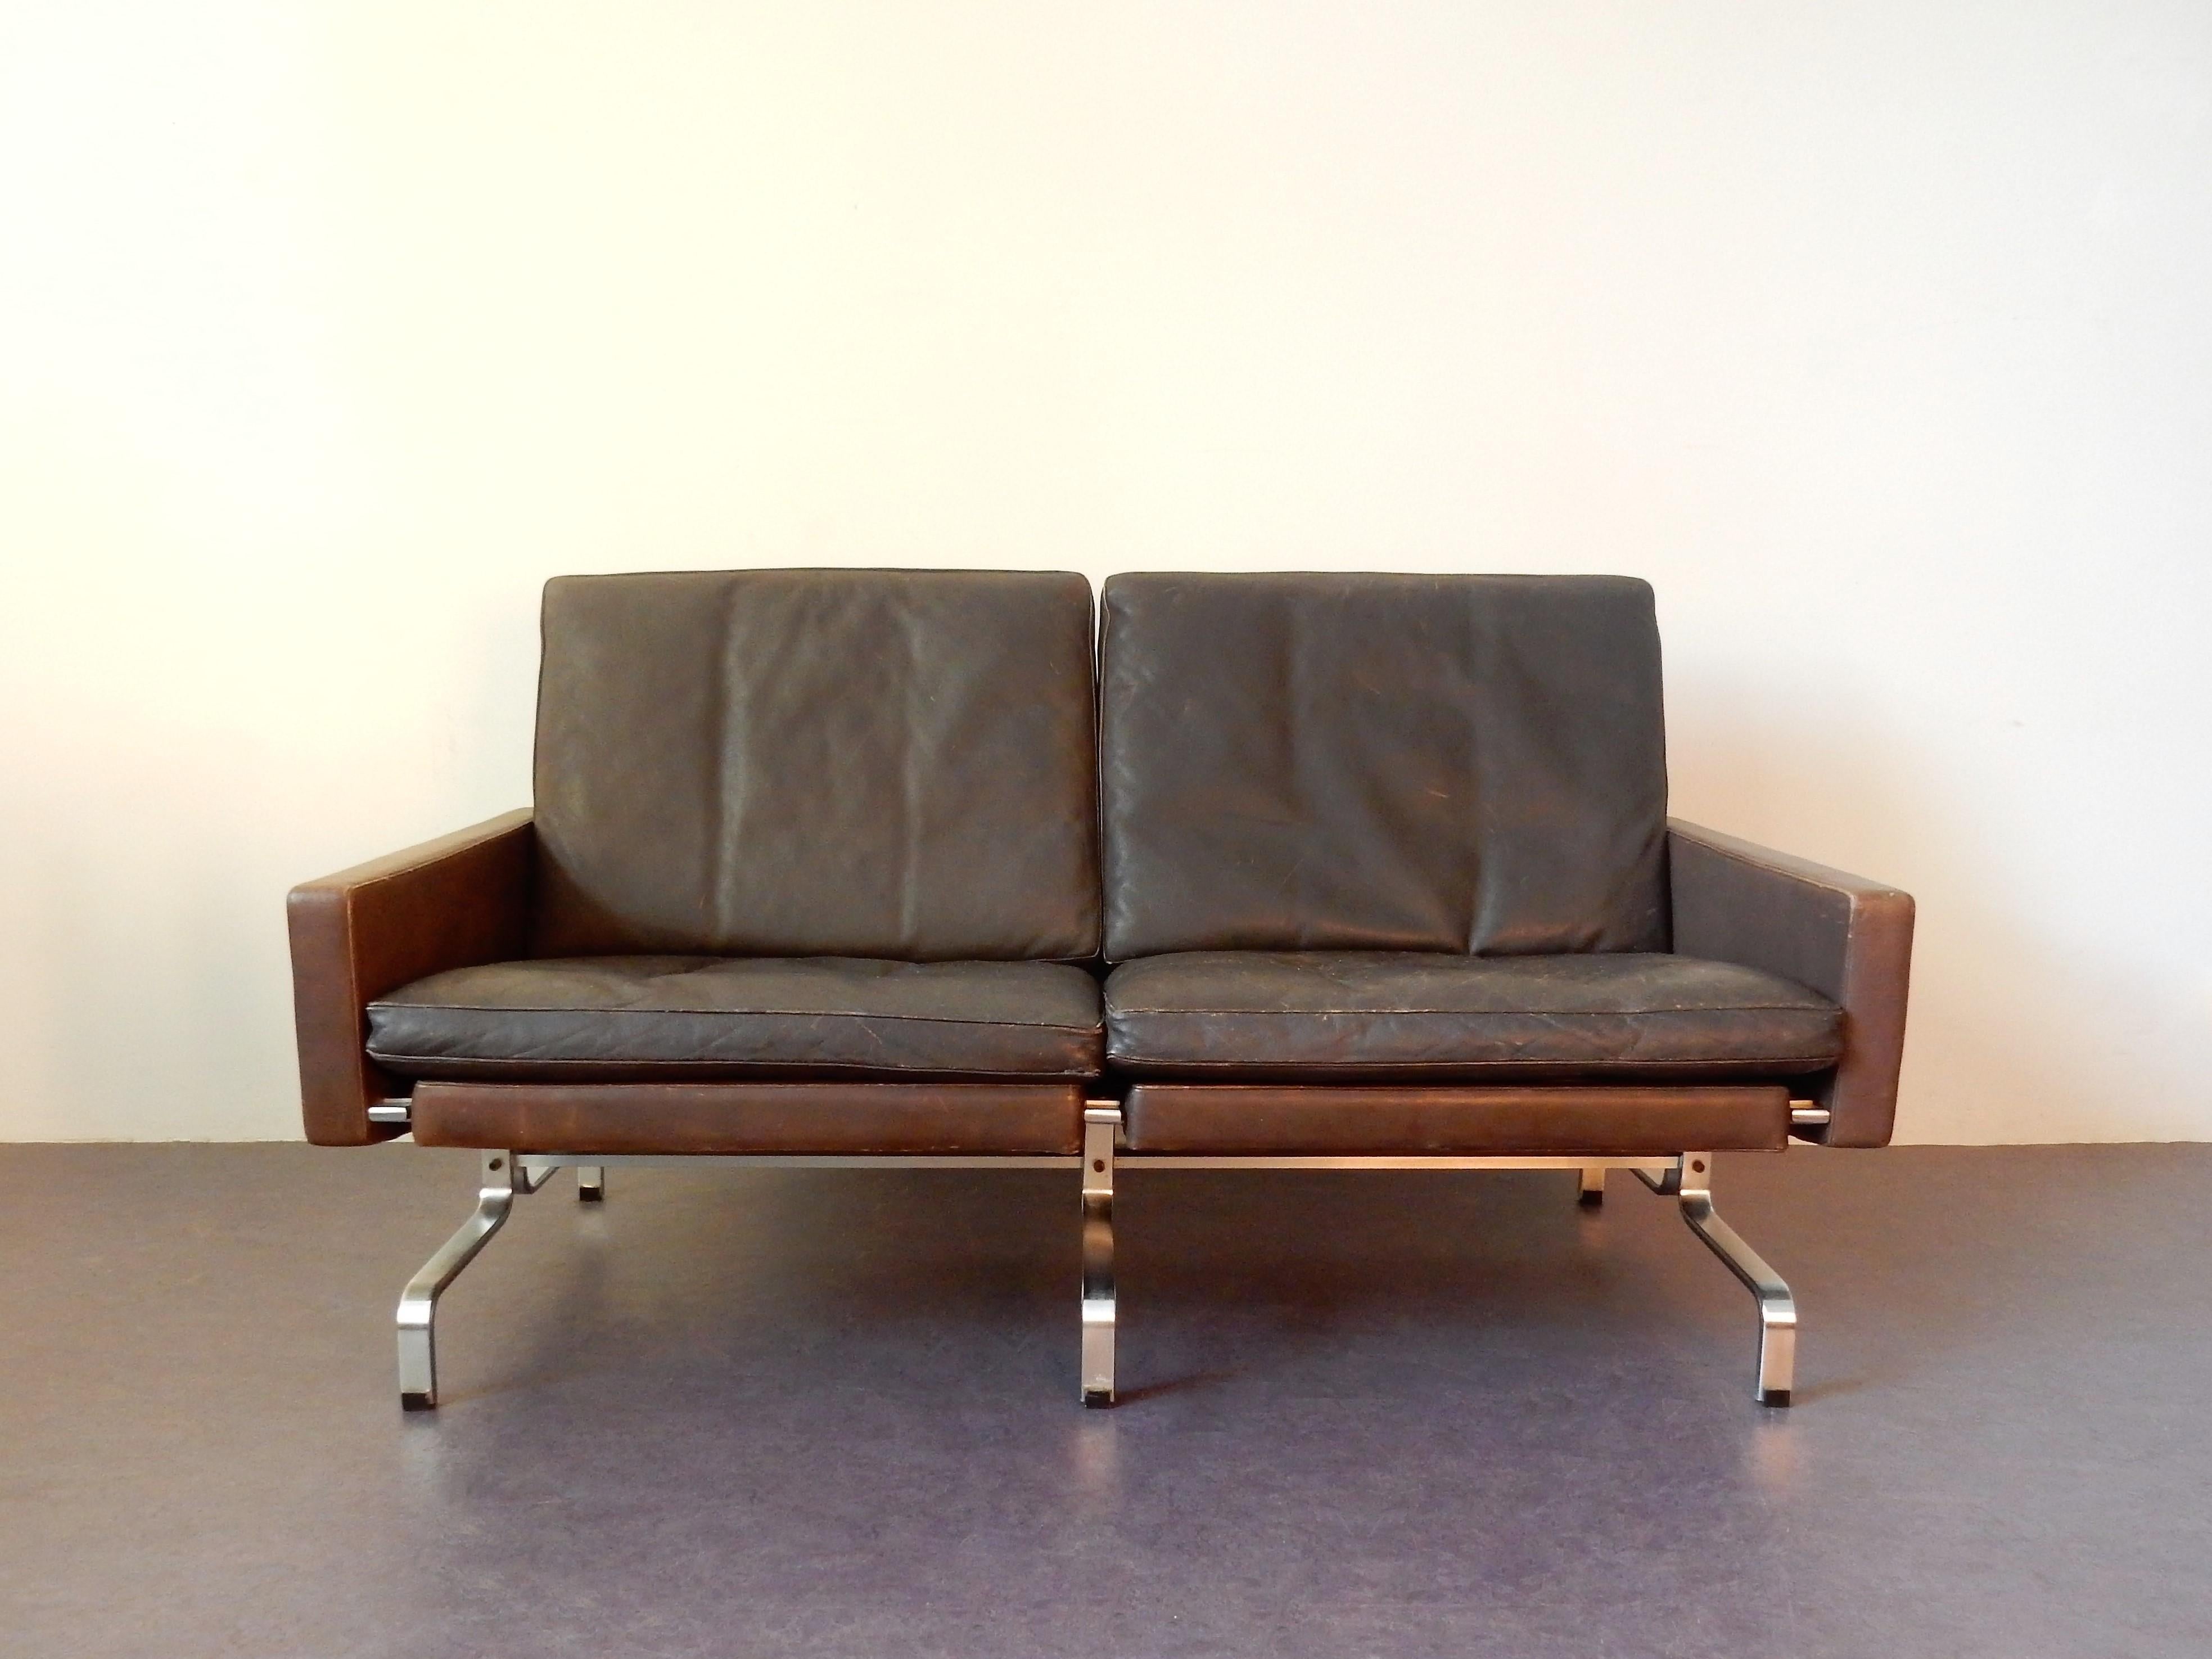 Mid-20th Century PK-31/2 Leather Sofa by Poul Kjaerholm for E. Kold Christensen, 1958, Denmark For Sale